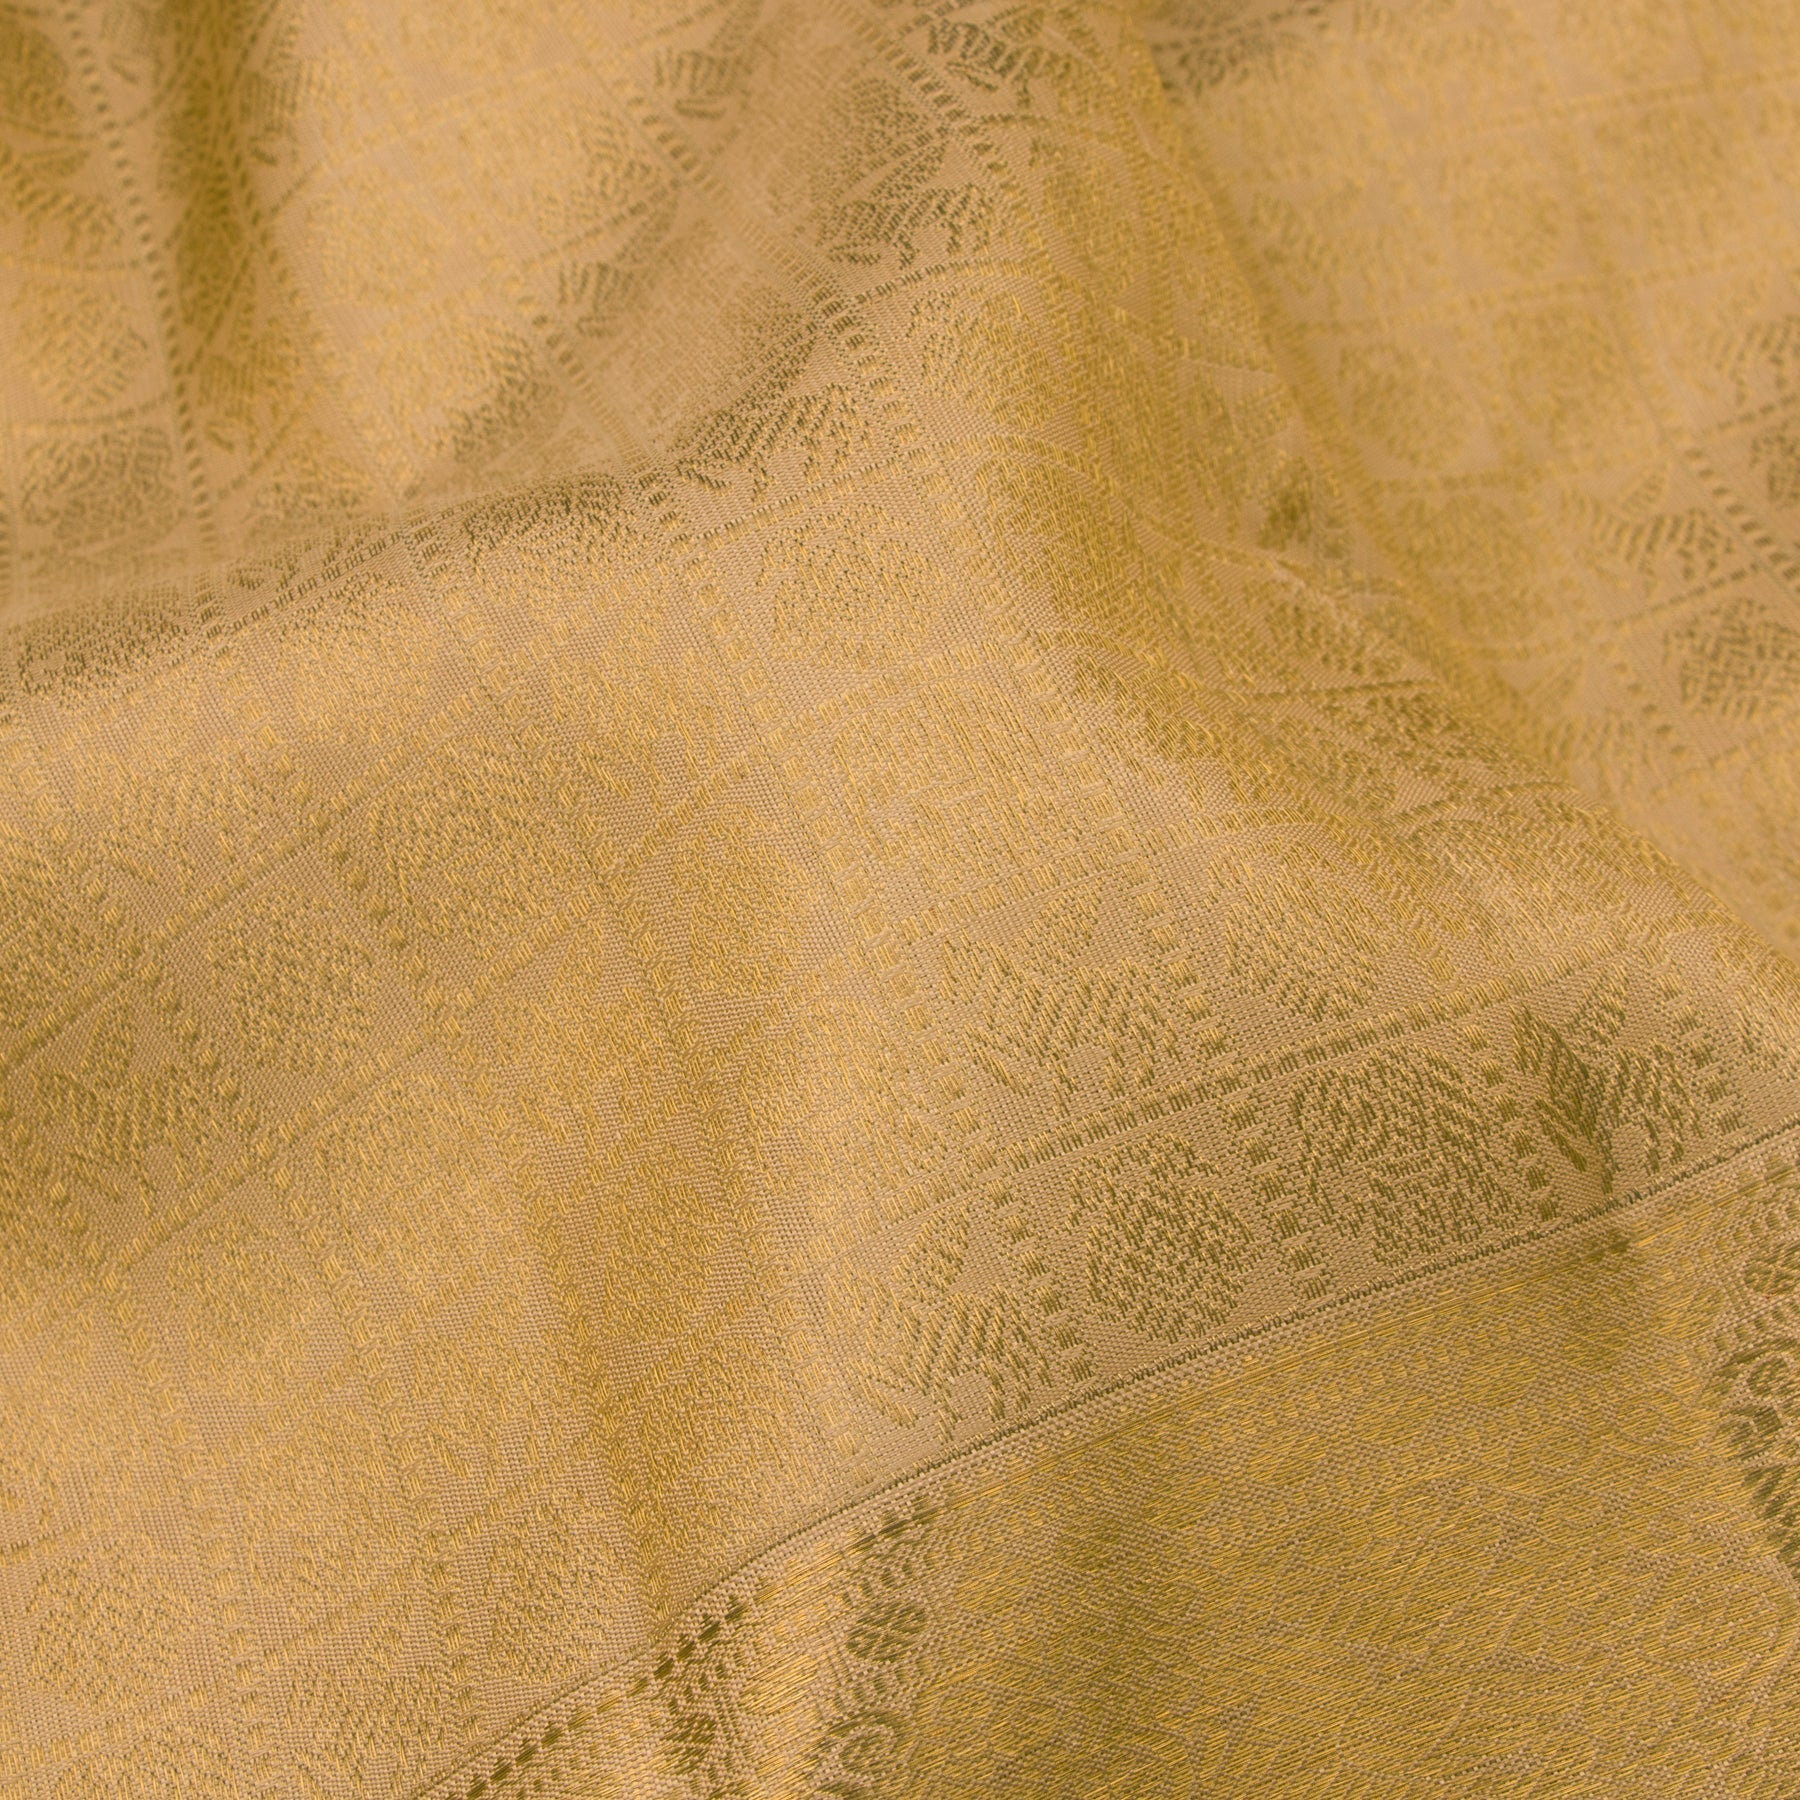 Kanakavalli Kanjivaram Silk Sari 23-110-HS001-00966 - Fabric View